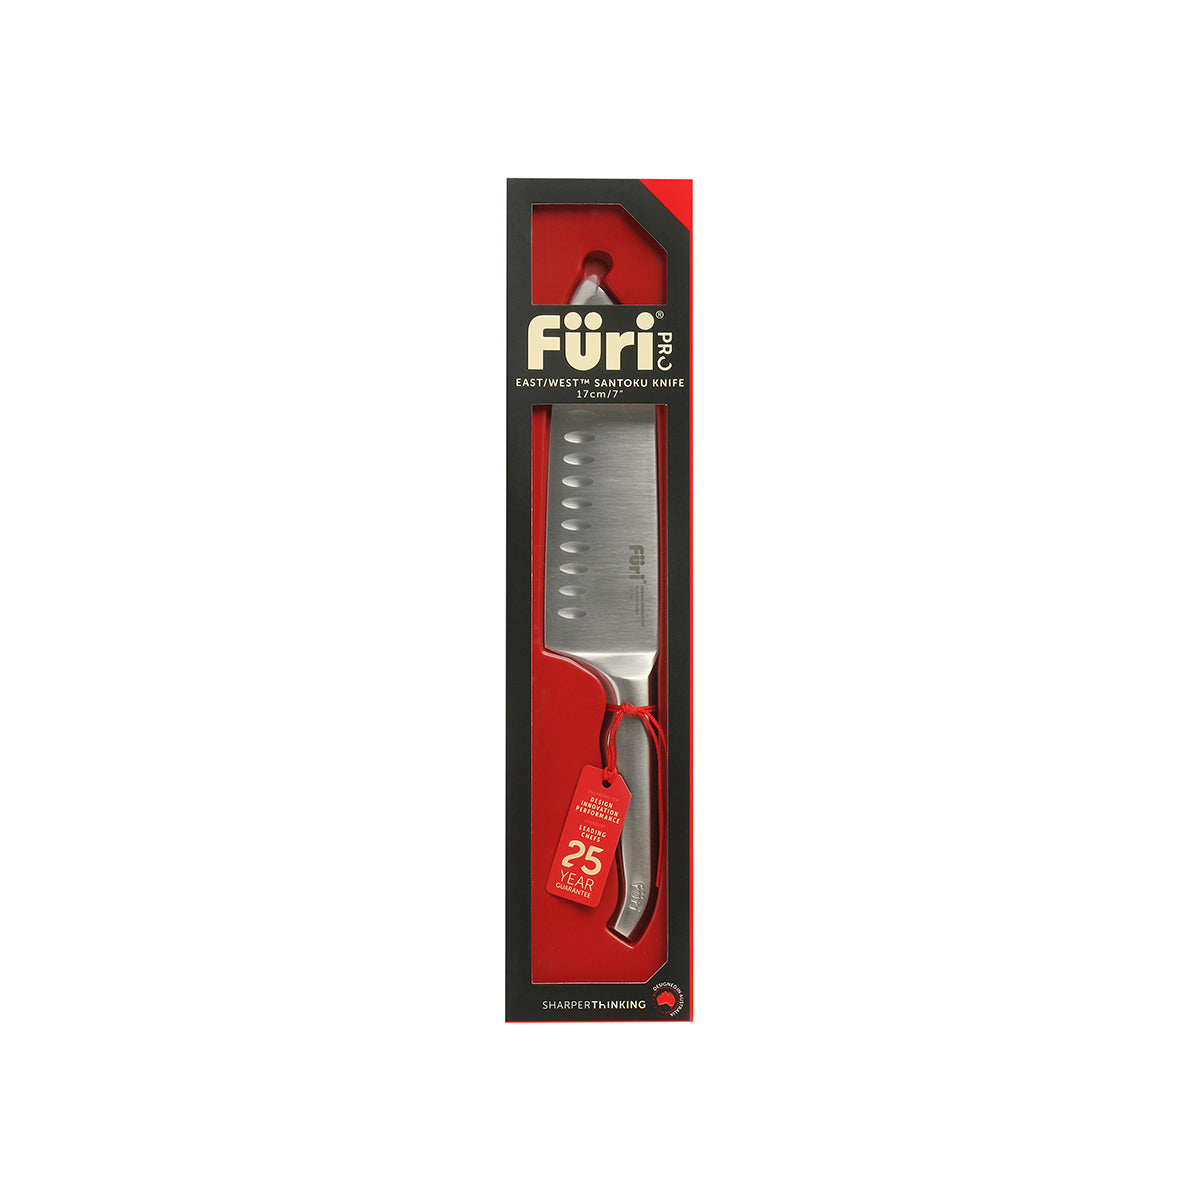 27191 Furi Pro East West Santoku Knife 170mm Tomkin Australia Hospitality Supplies